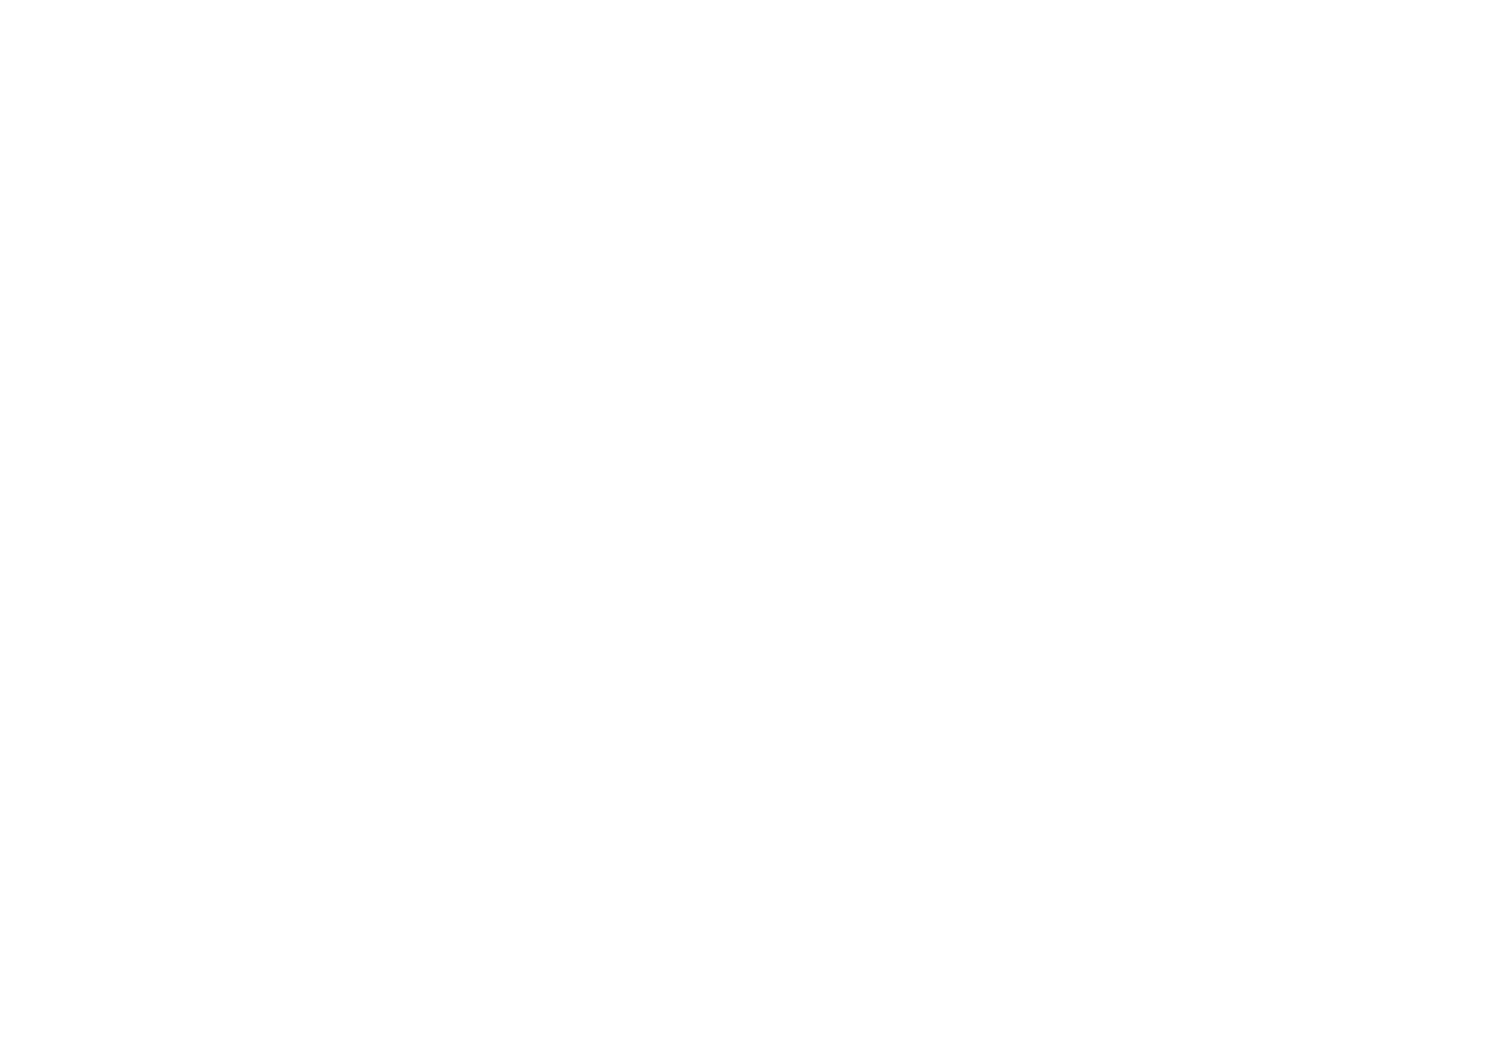 Aviara Institute